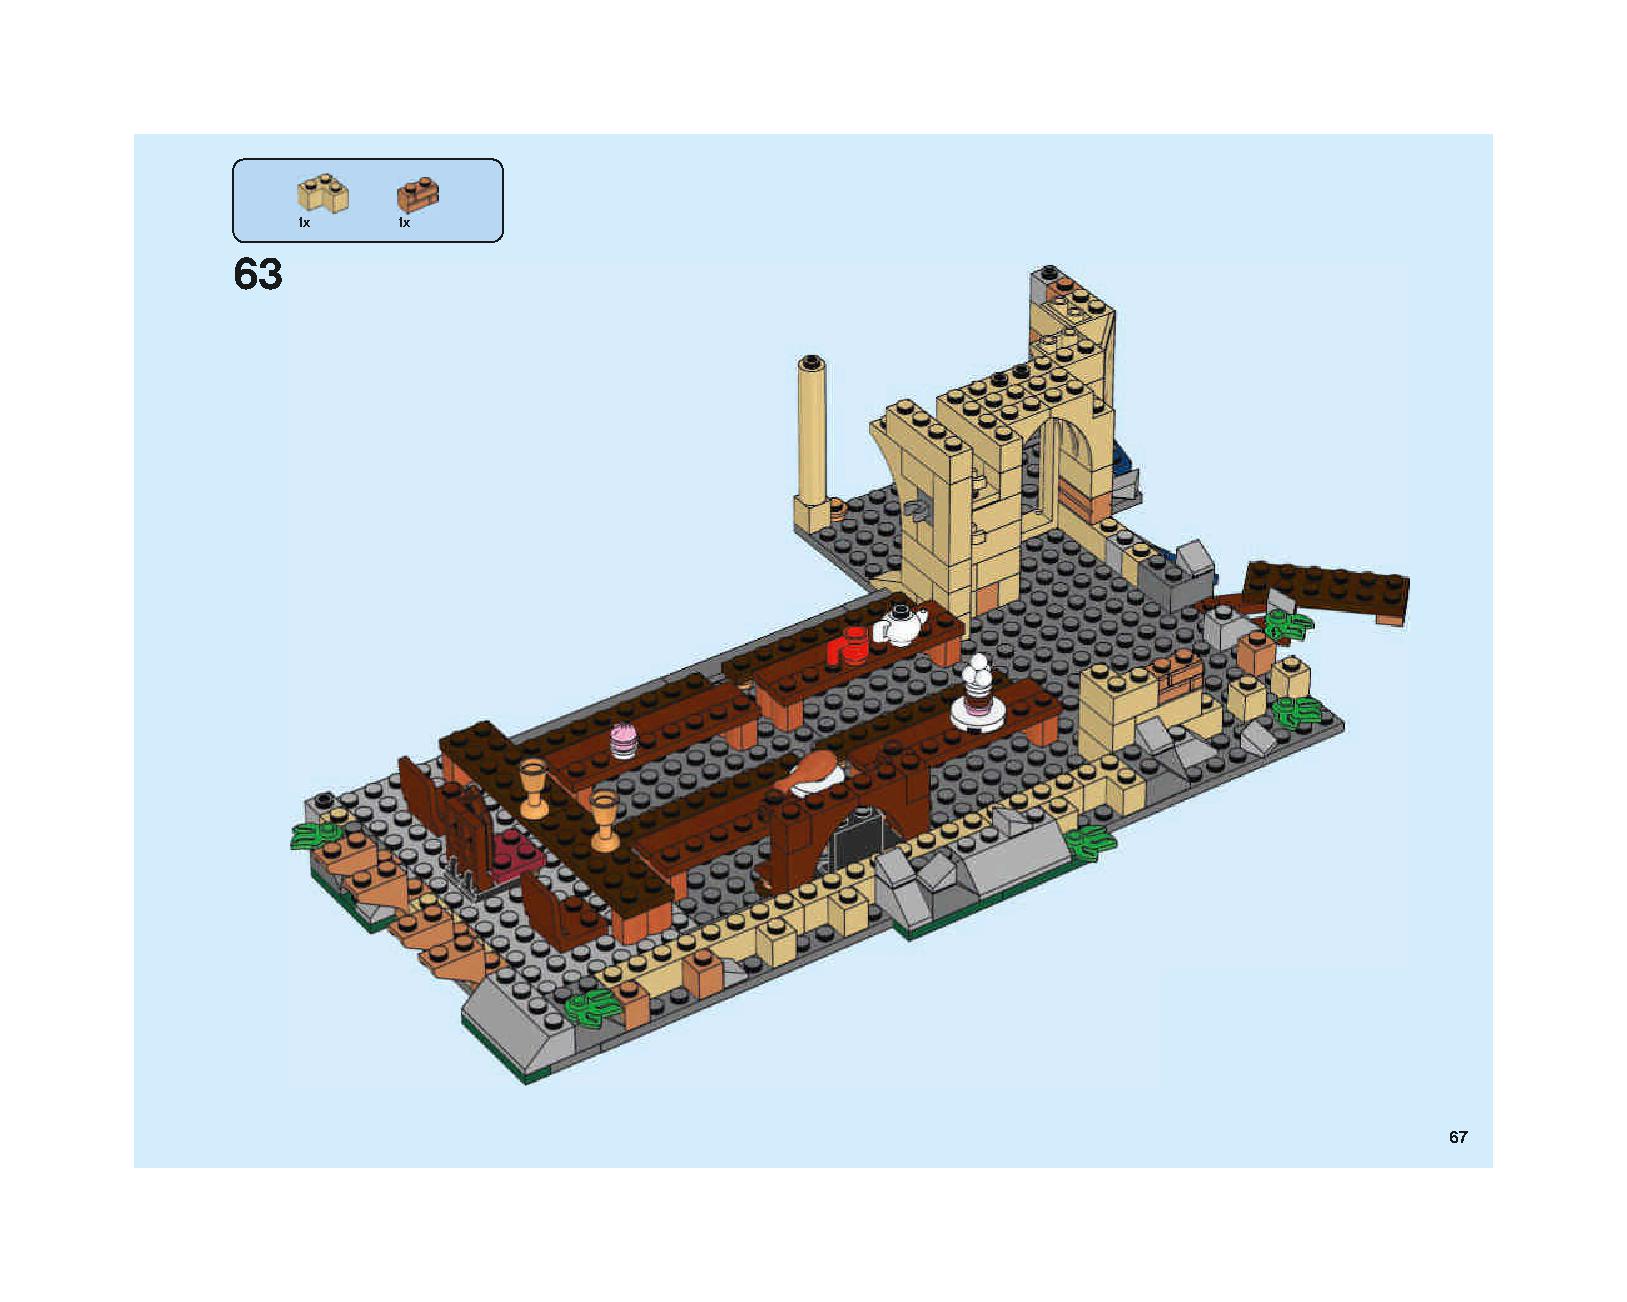 ホグワーツの大広間 75954 レゴの商品情報 レゴの説明書・組立方法 67 page